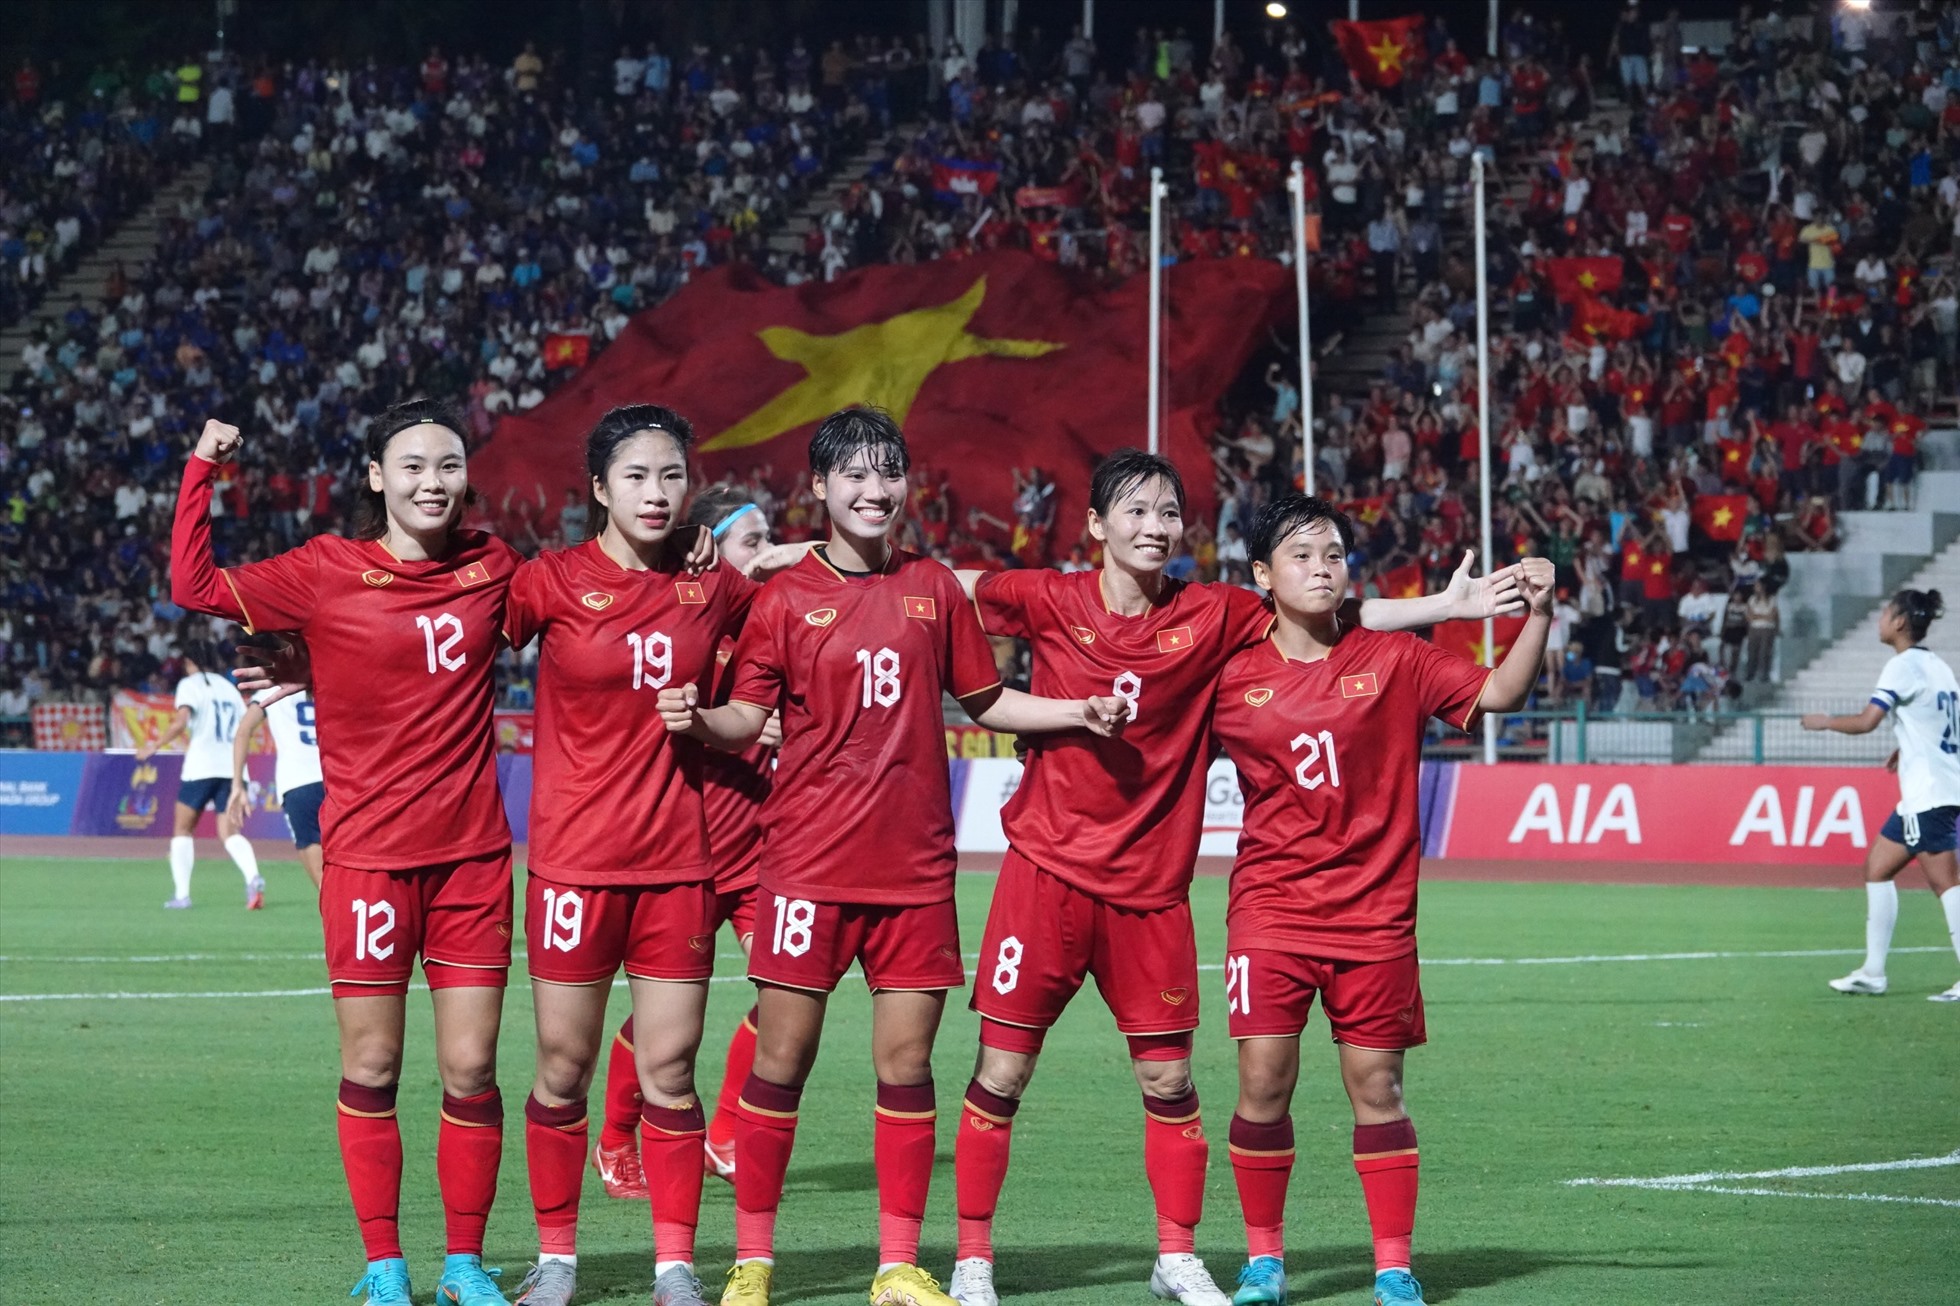 Thùy Trang ghi bàn trên chấm 11m, tuyển nữ Việt Nam có bàn thắng thứ ba. Ảnh: Đăng Văn